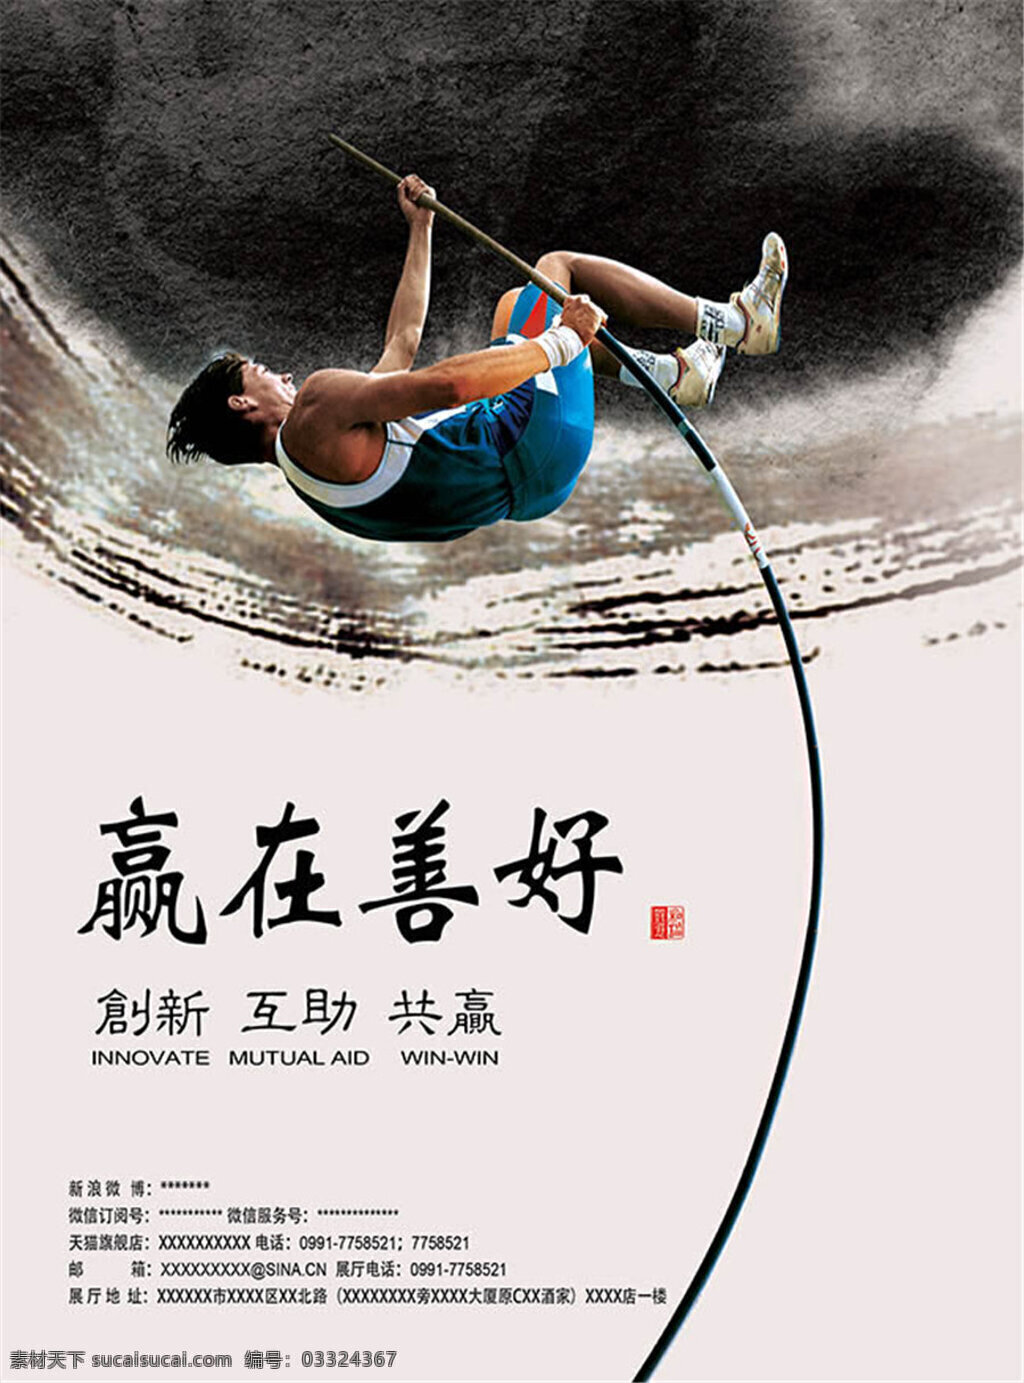 企业 文化 水墨 传统 企业文化 挂画 海报 中国风 水墨风格挂画 企业文化海报 企业文化墙